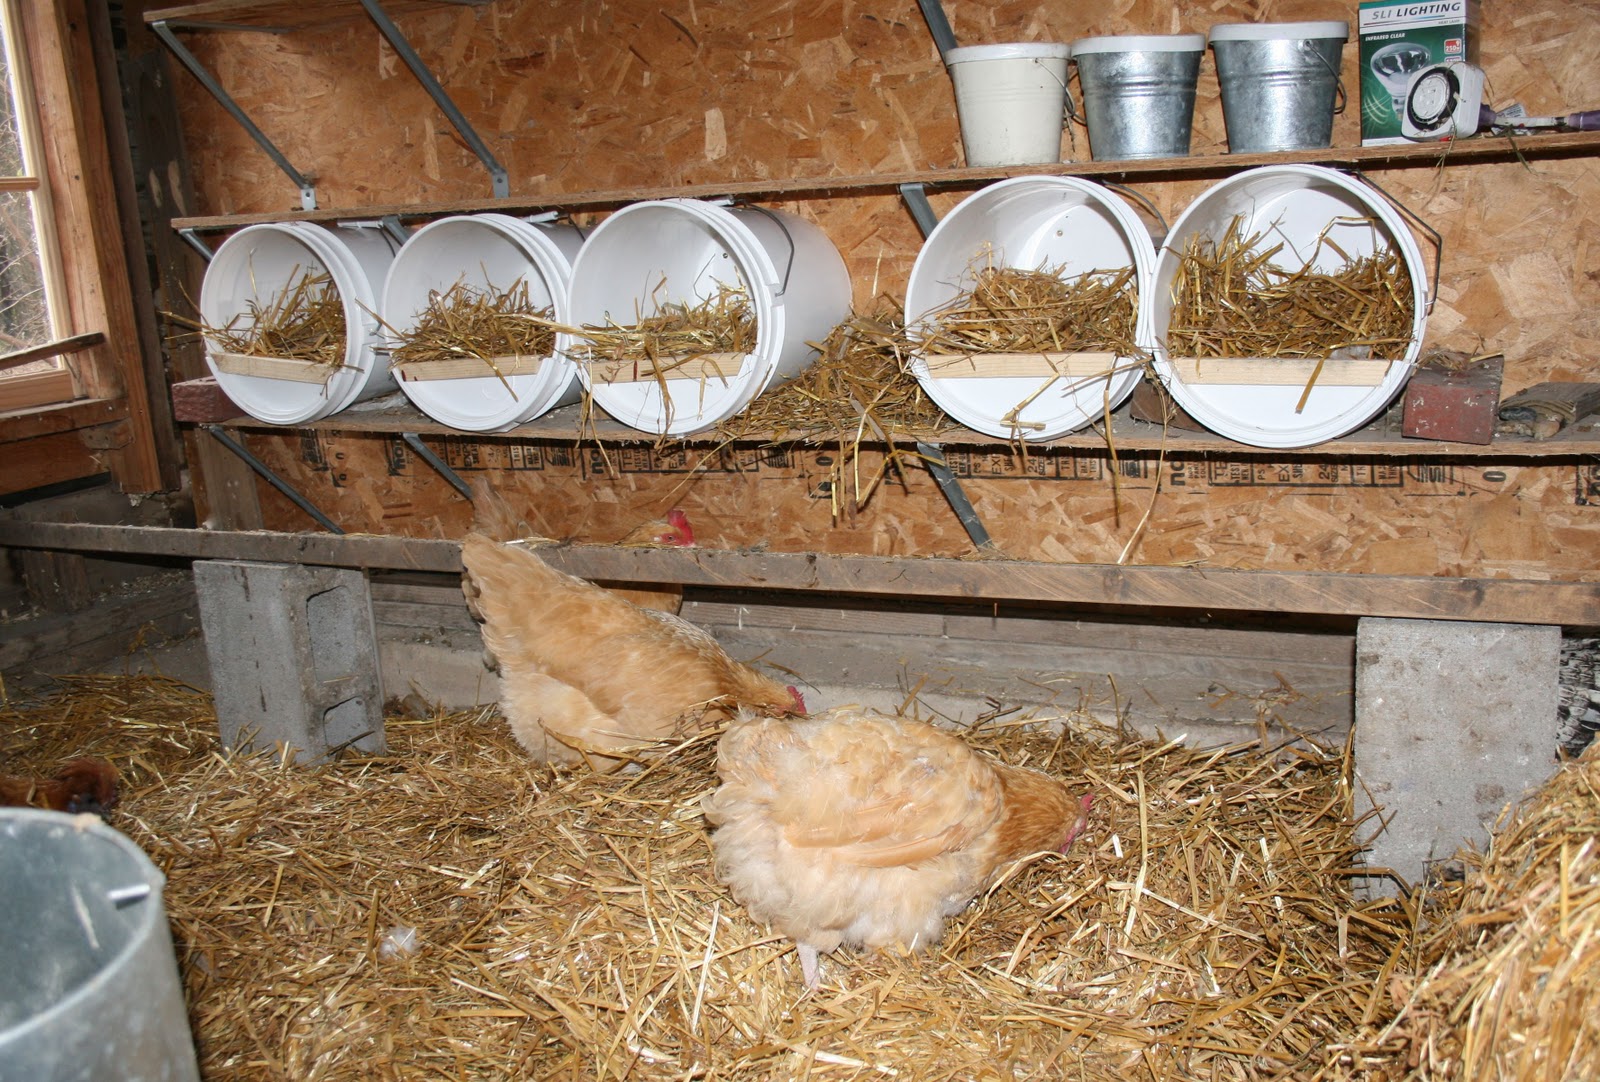 تجهیزات پرورش مرغ رسمی / لانه های تخمگذاری در پرورش مرغ بومی تخمگذار